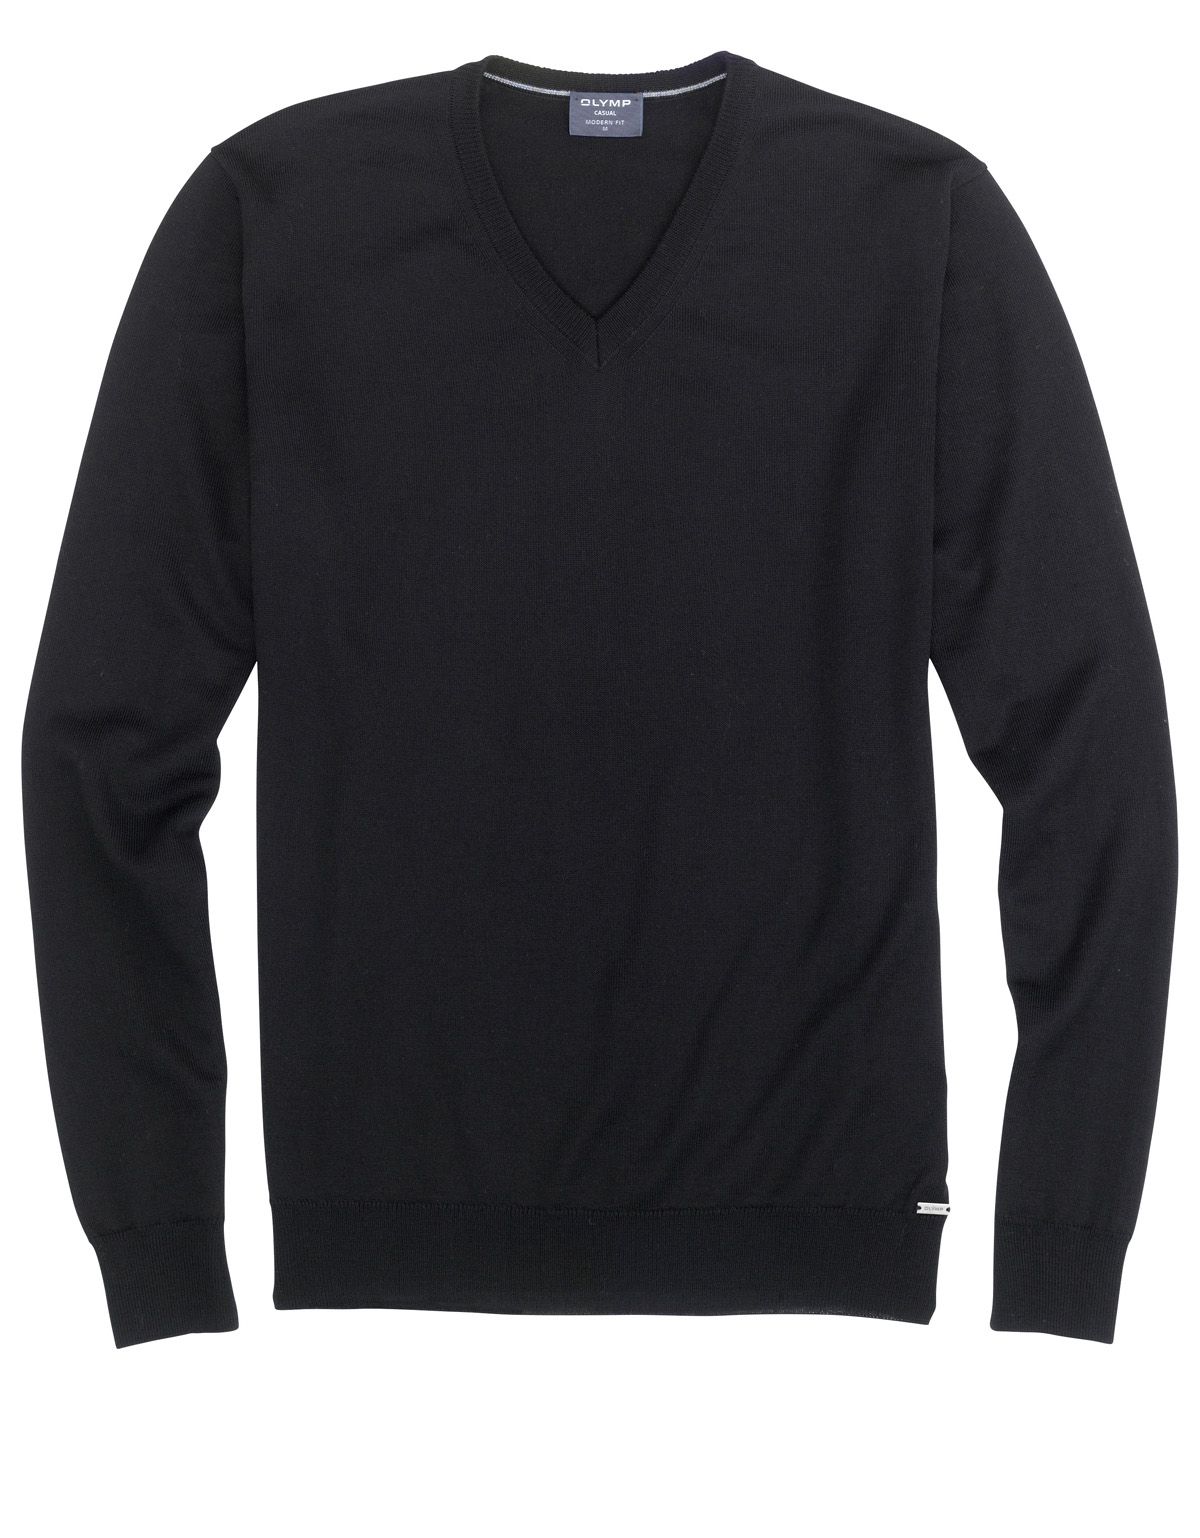 Пуловер чёрный мужской OLYMP, modern fit | купить в интернет-магазине Olymp-Men